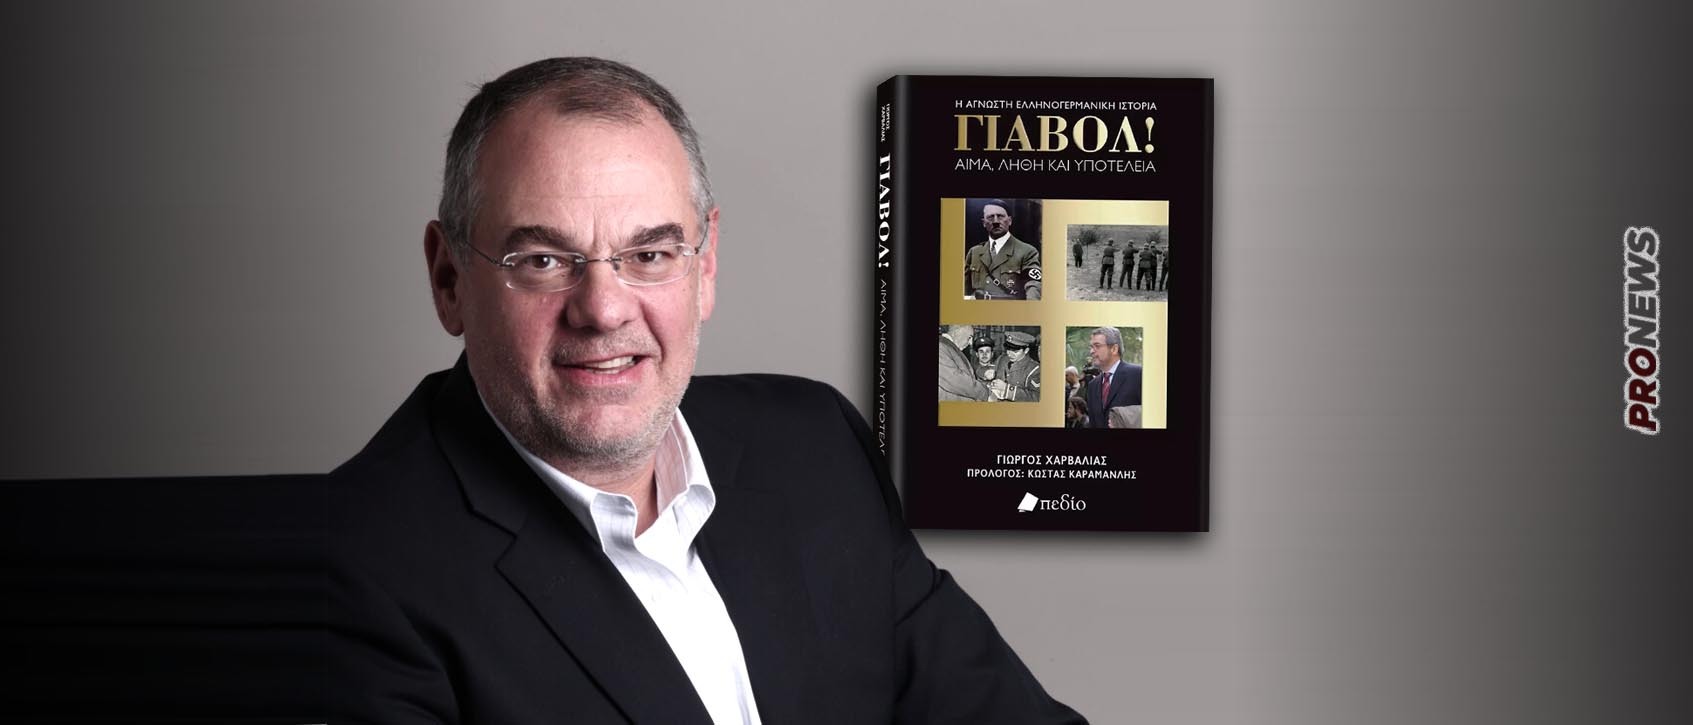 «Γιαβόλ!»: Επίσημη παρουσίαση του βιβλίου του Γιώργου Χαρβαλιά για τις ελληνογερμανικές σχέσεις στο Πολεμικό Μουσείο